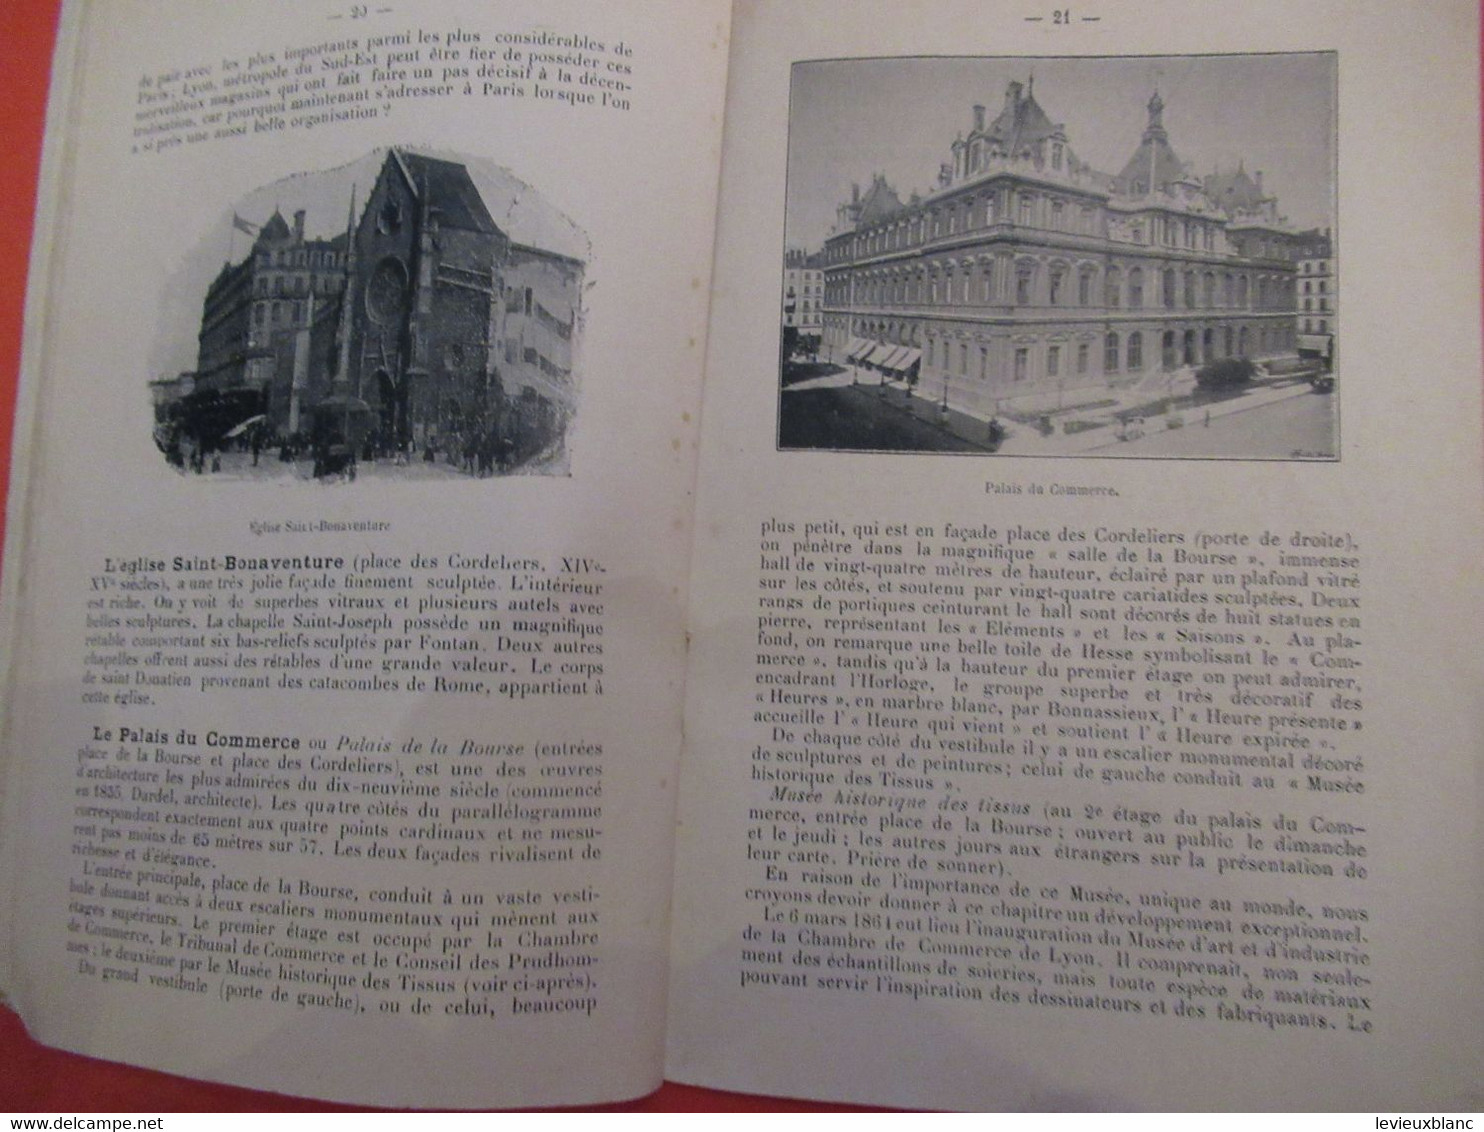 Guide indispensable à l'Etranger de passage à LYON/Principales curiosités de Lyon/ entre 1895/1905         PGC461